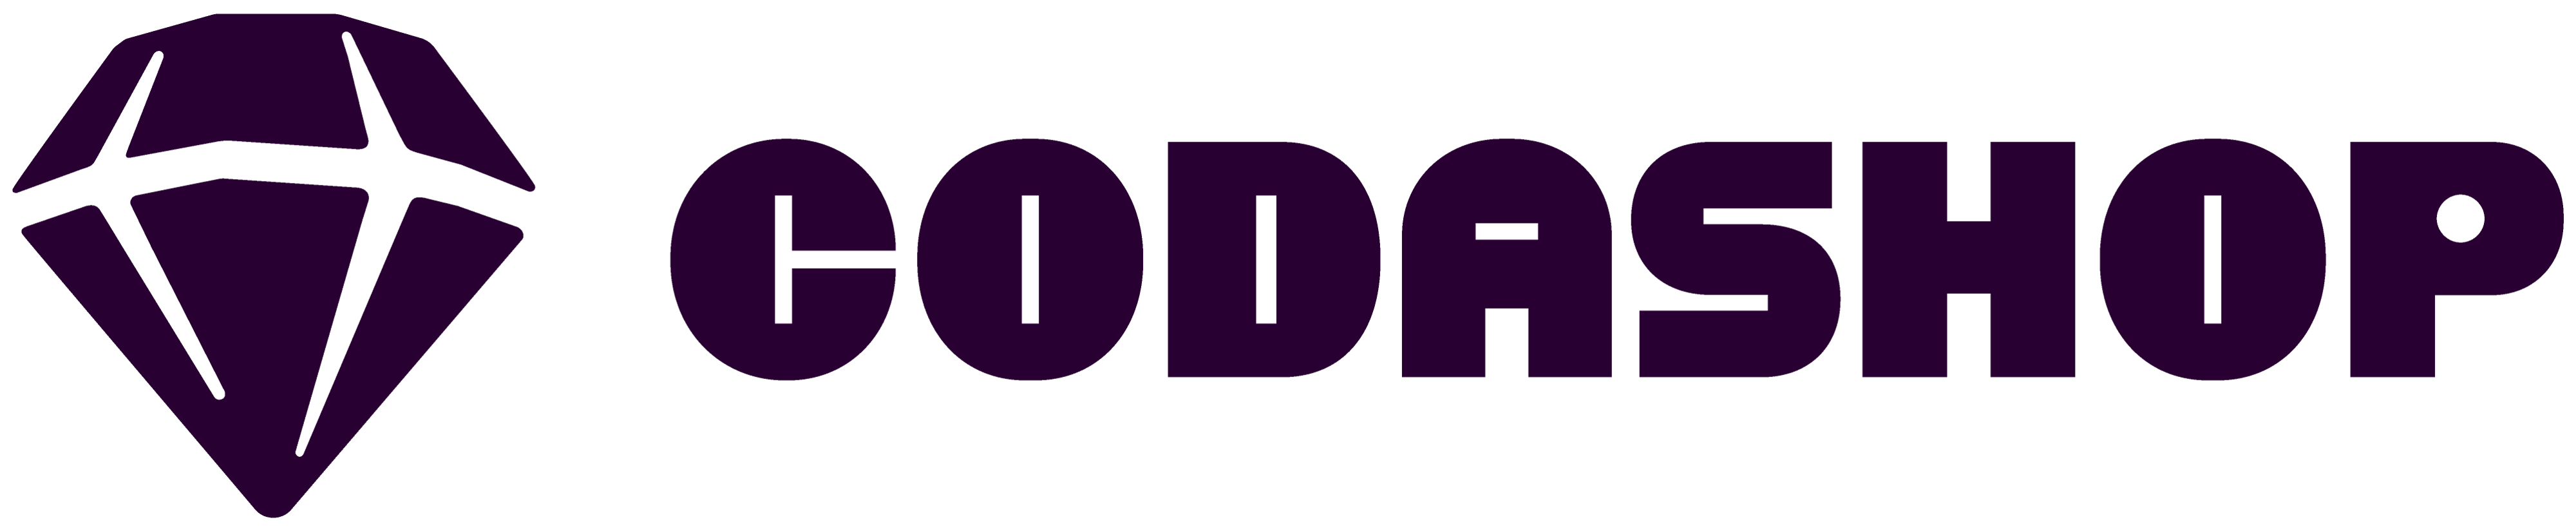 Codashop-logo-horizontal-dark-matter.png